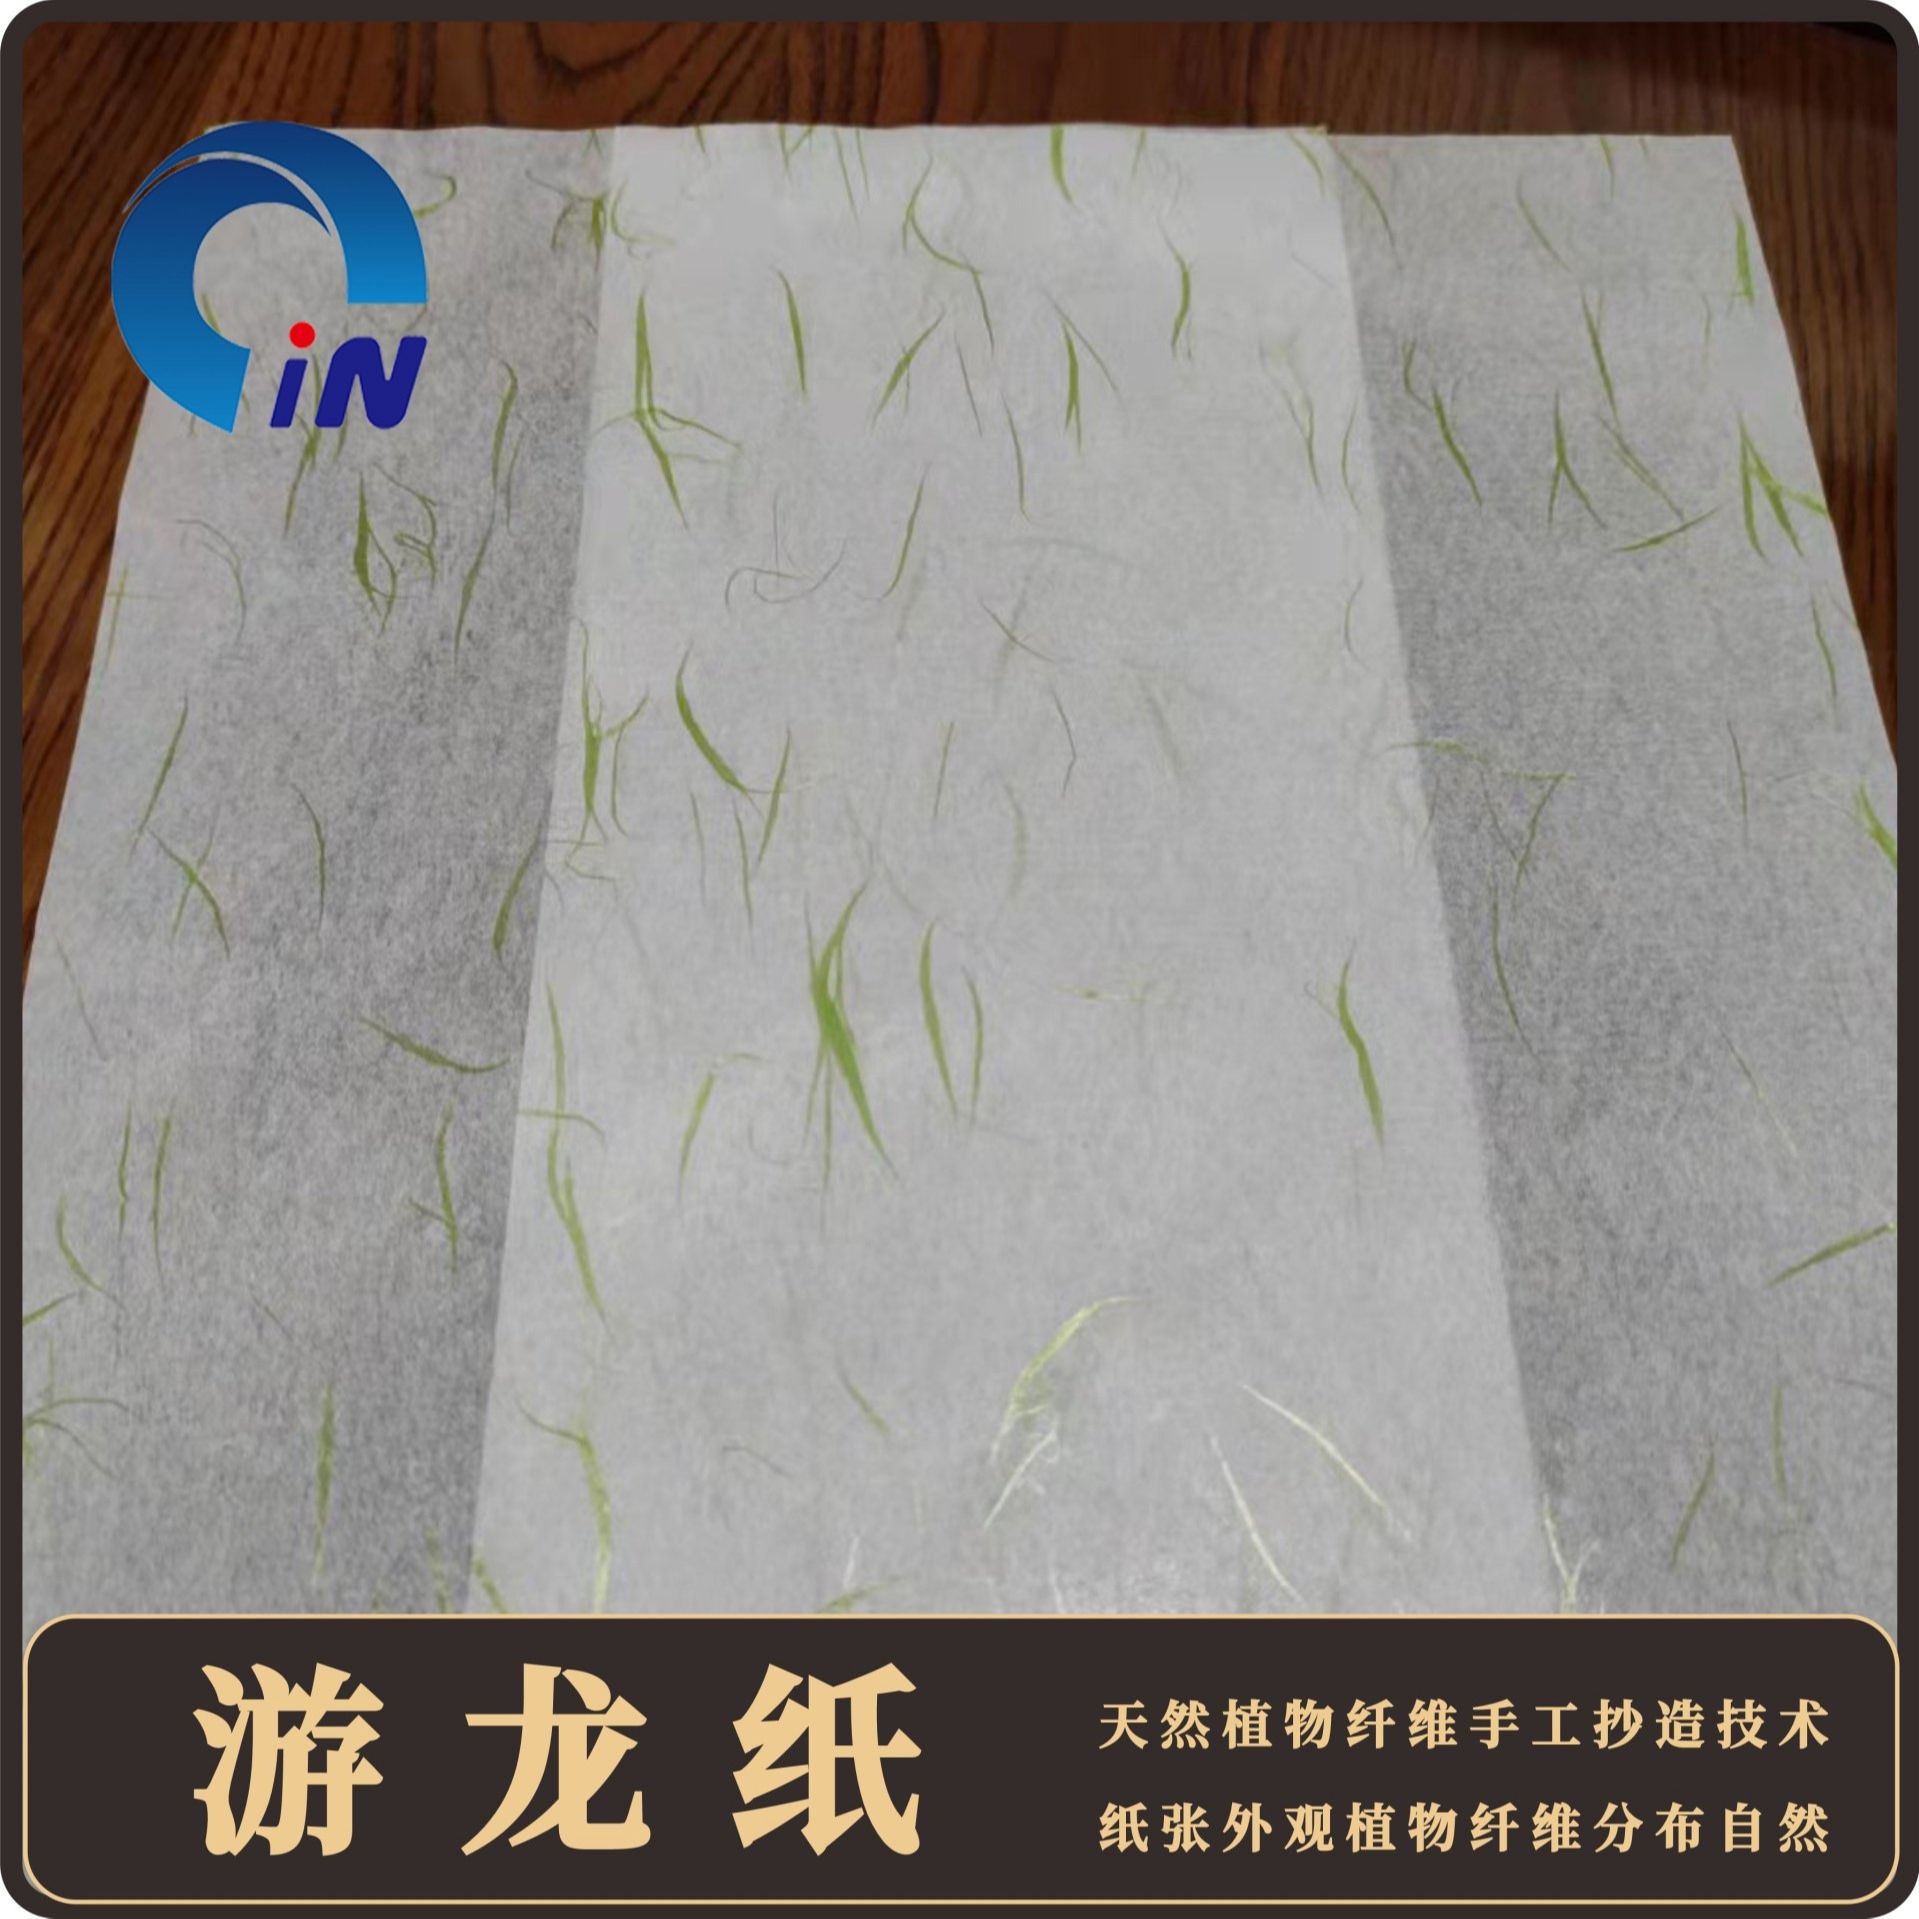 绿色环保节能品质优包装用纸植物纤维自然色彩绚丽游龙纸